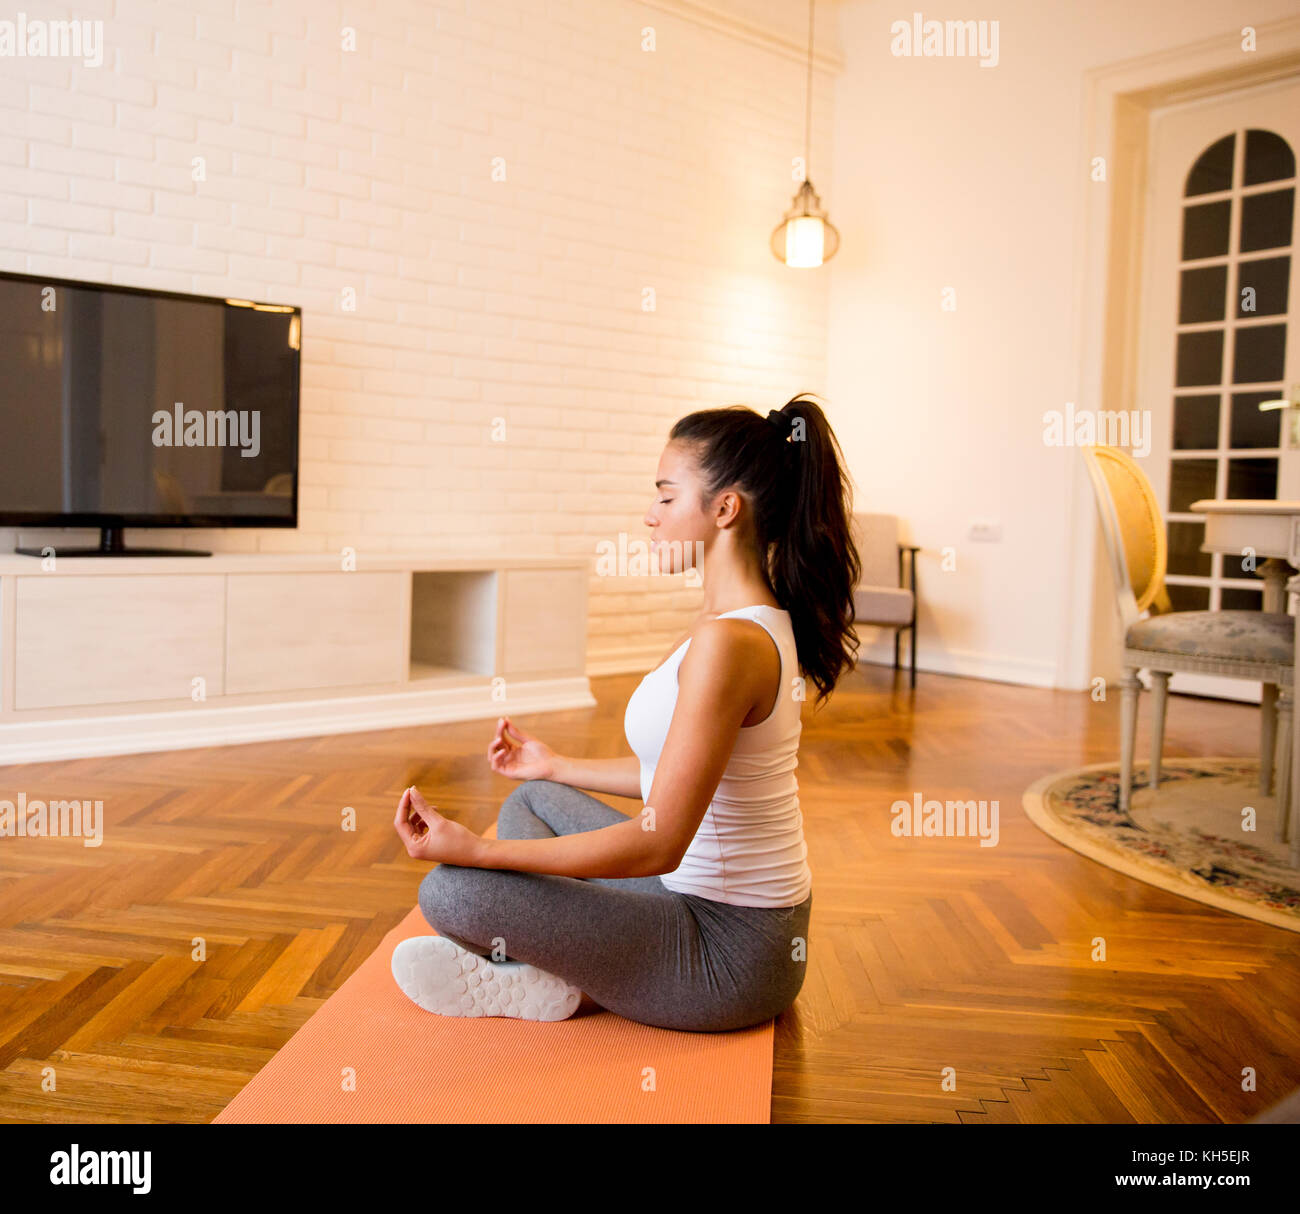 Jeune femme assise sur le plancher à la maison faisant du yoga meditation Banque D'Images